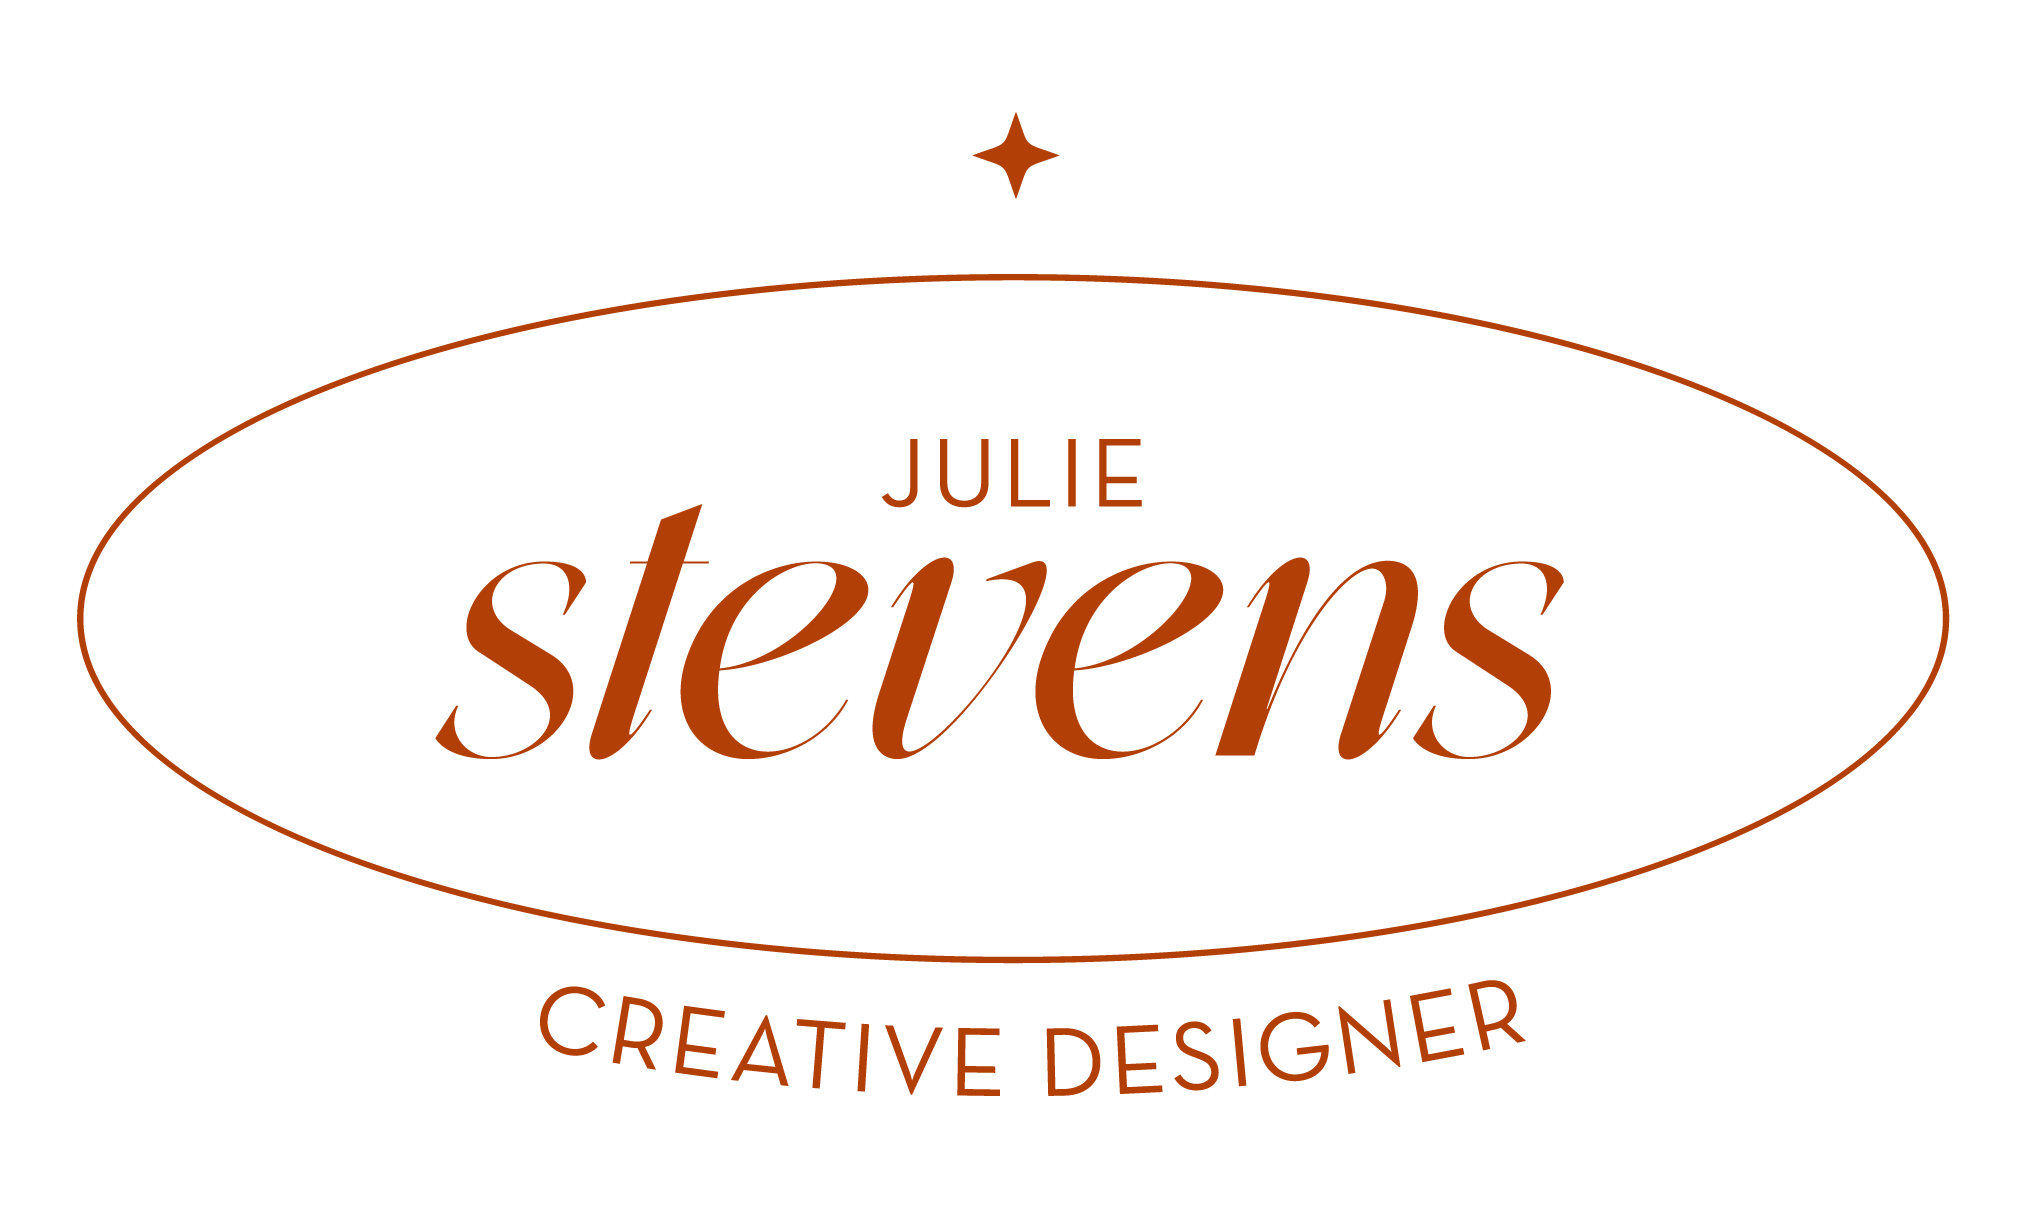 Julie Stevens